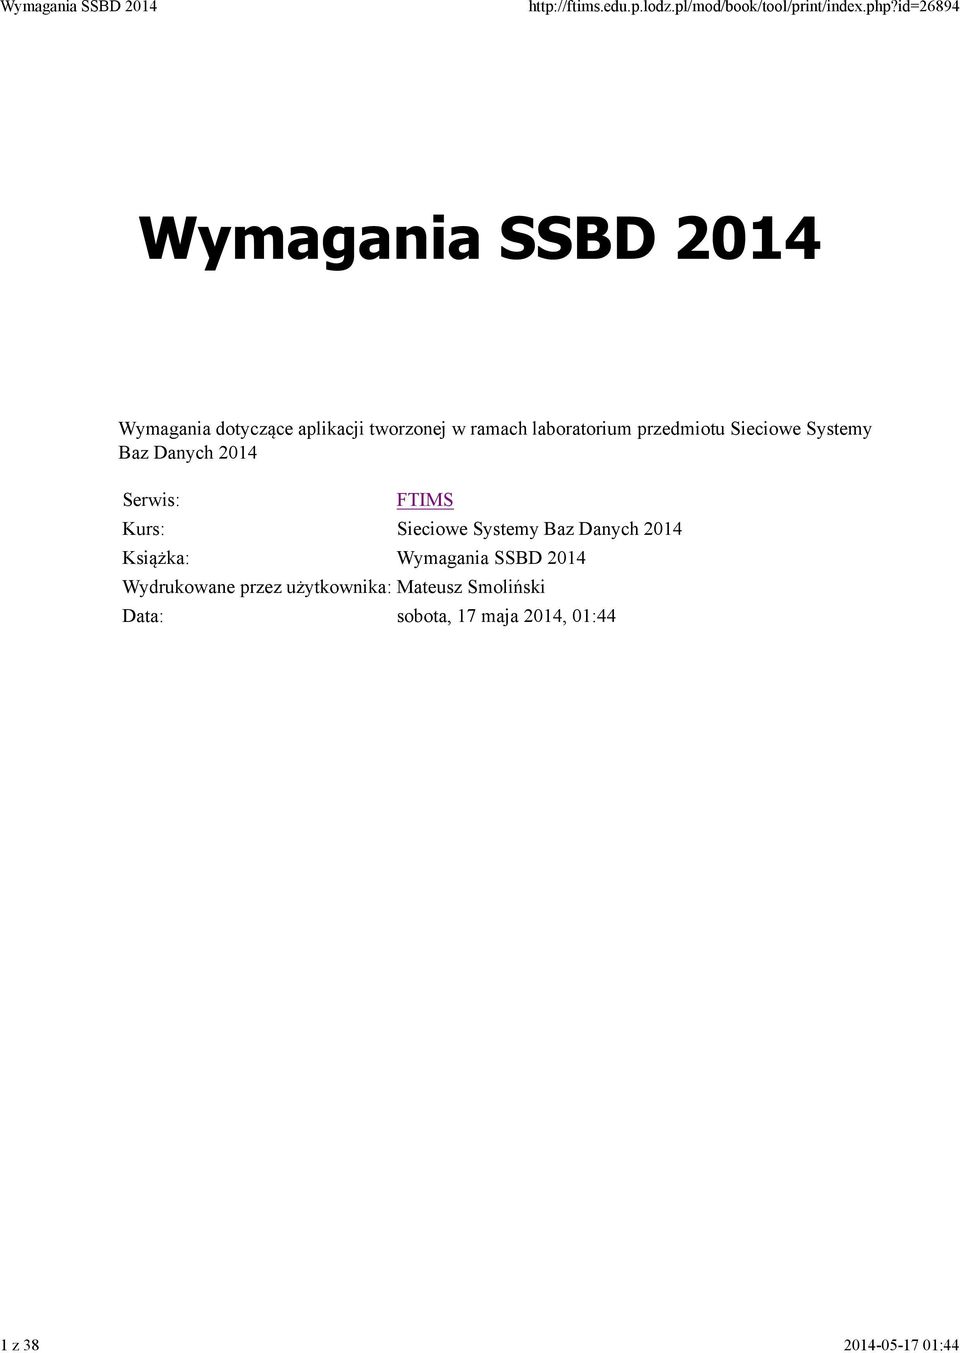 Kurs: Sieciowe Systemy Baz Danych 2014 Książka: Wymagania SSBD 2014